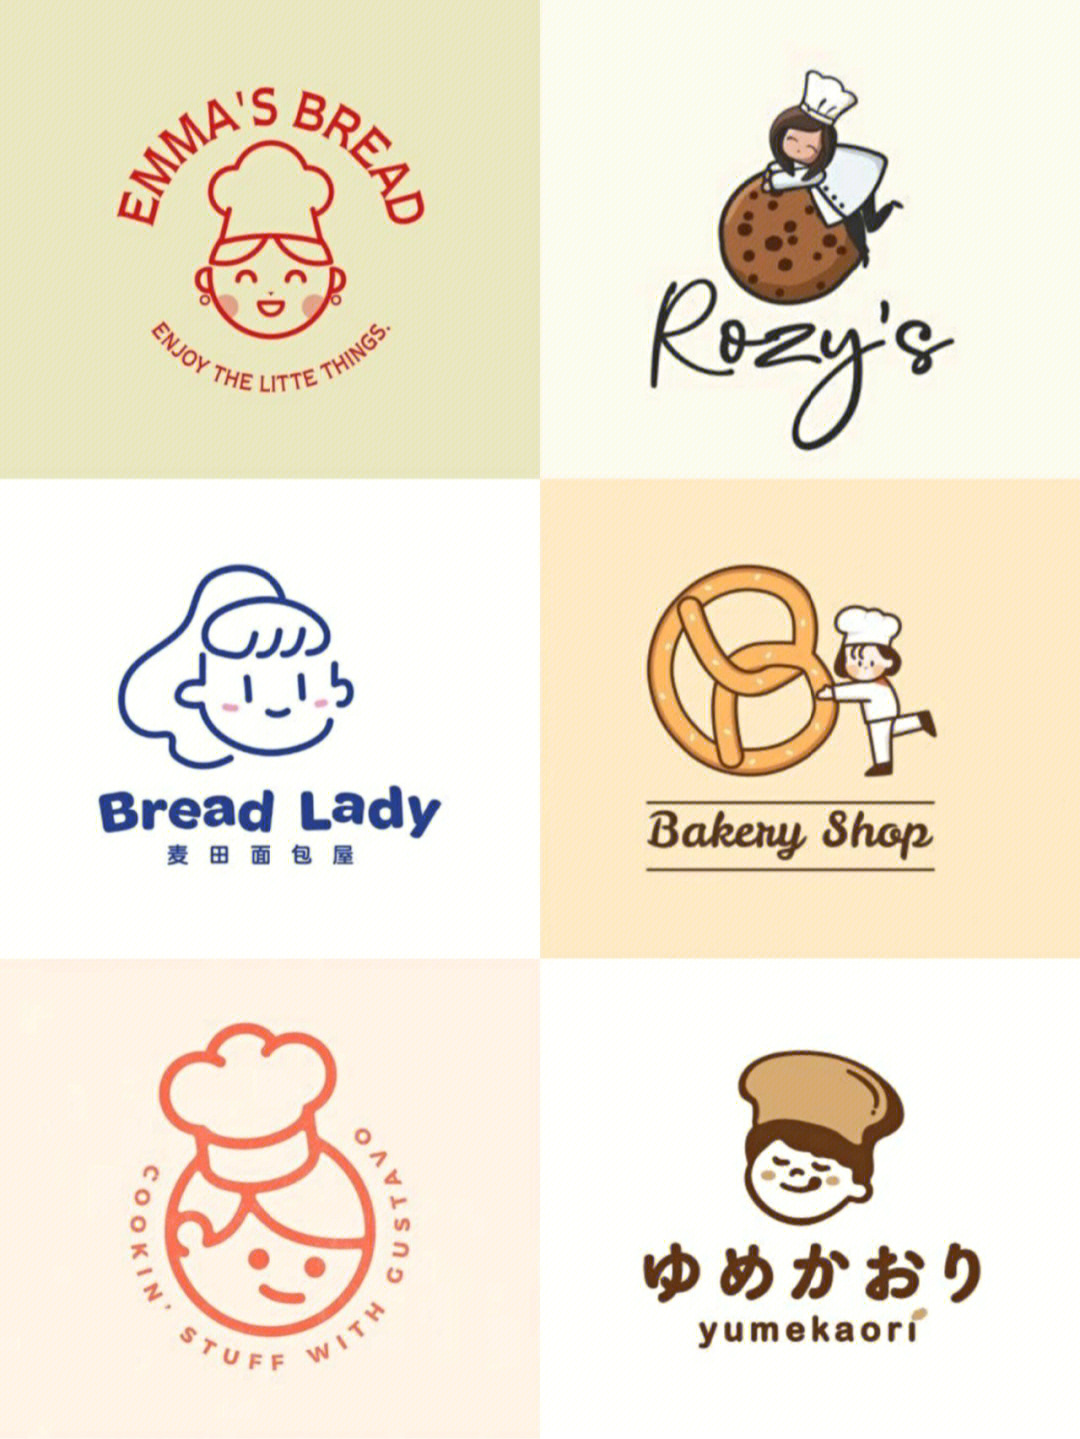 烘焙店logo设计理念图片